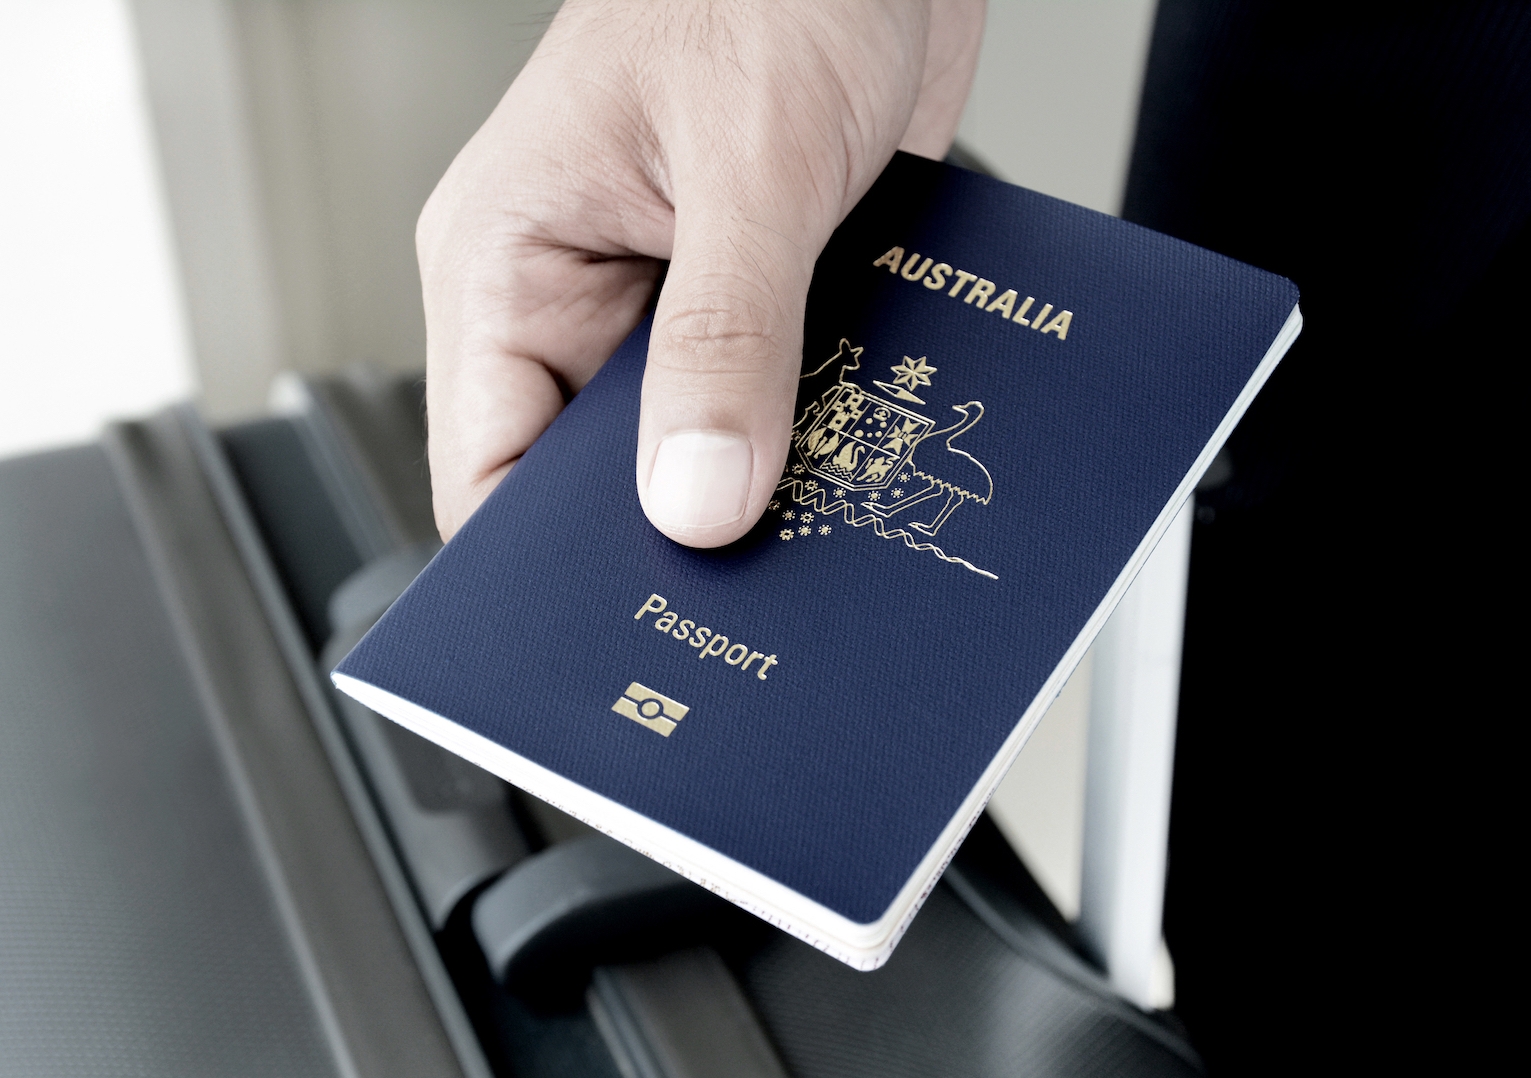 travel document australia price